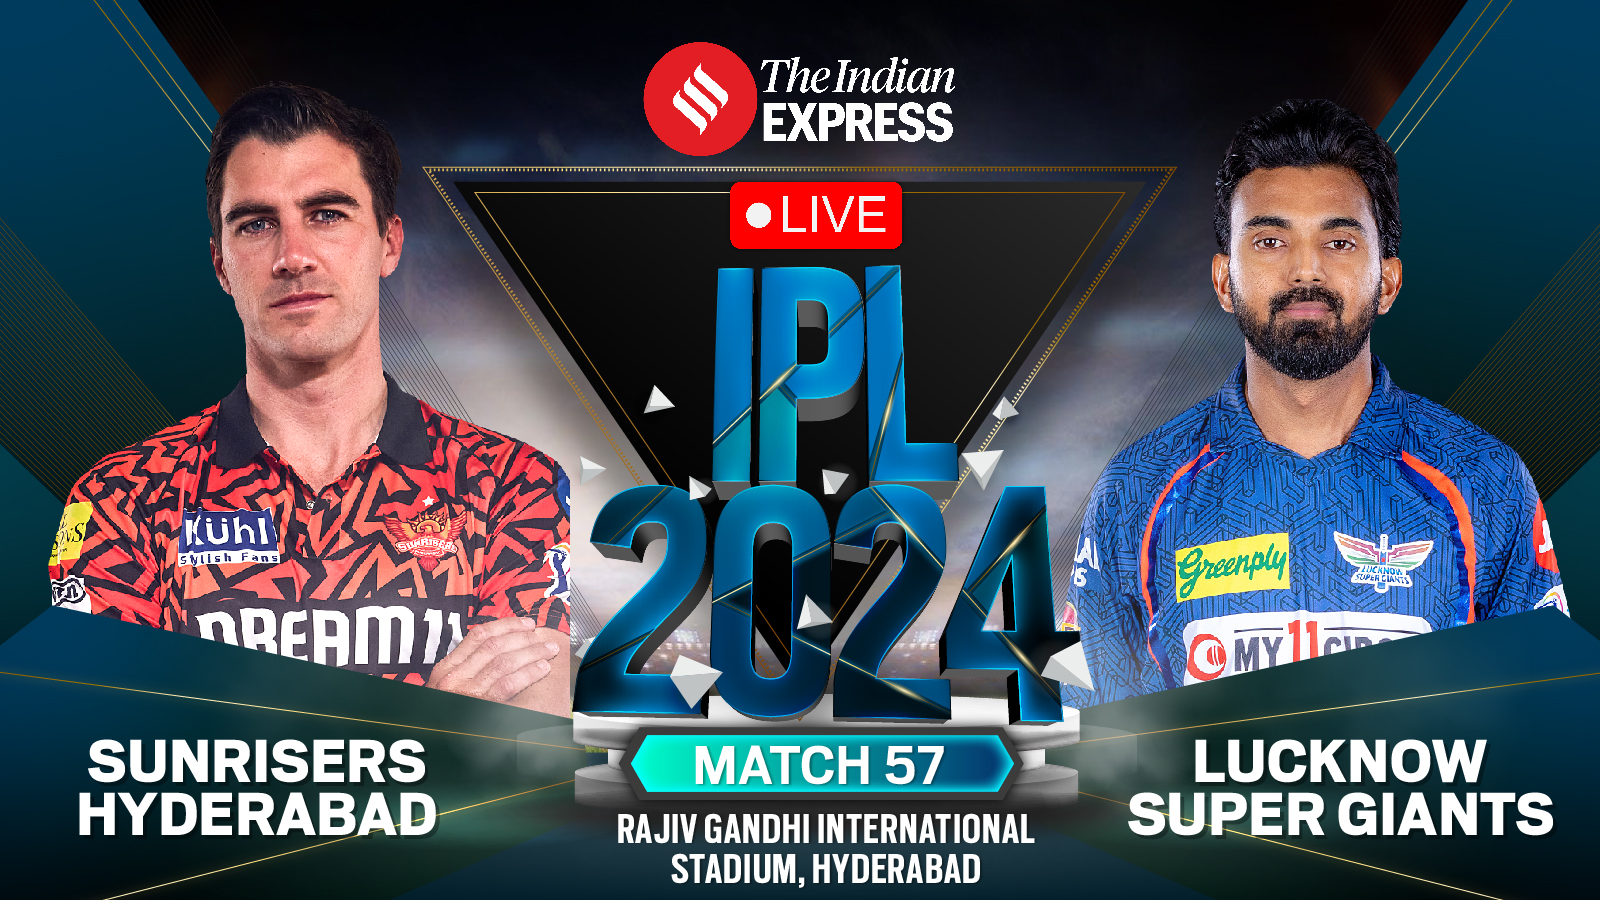 SRH vs LSG Wynik na żywo, IPL 2024: Lucknow Super Giants 3/0 (1 over), KL Rahul i Quinton de Kock otwarte |  Wiadomości krykieta